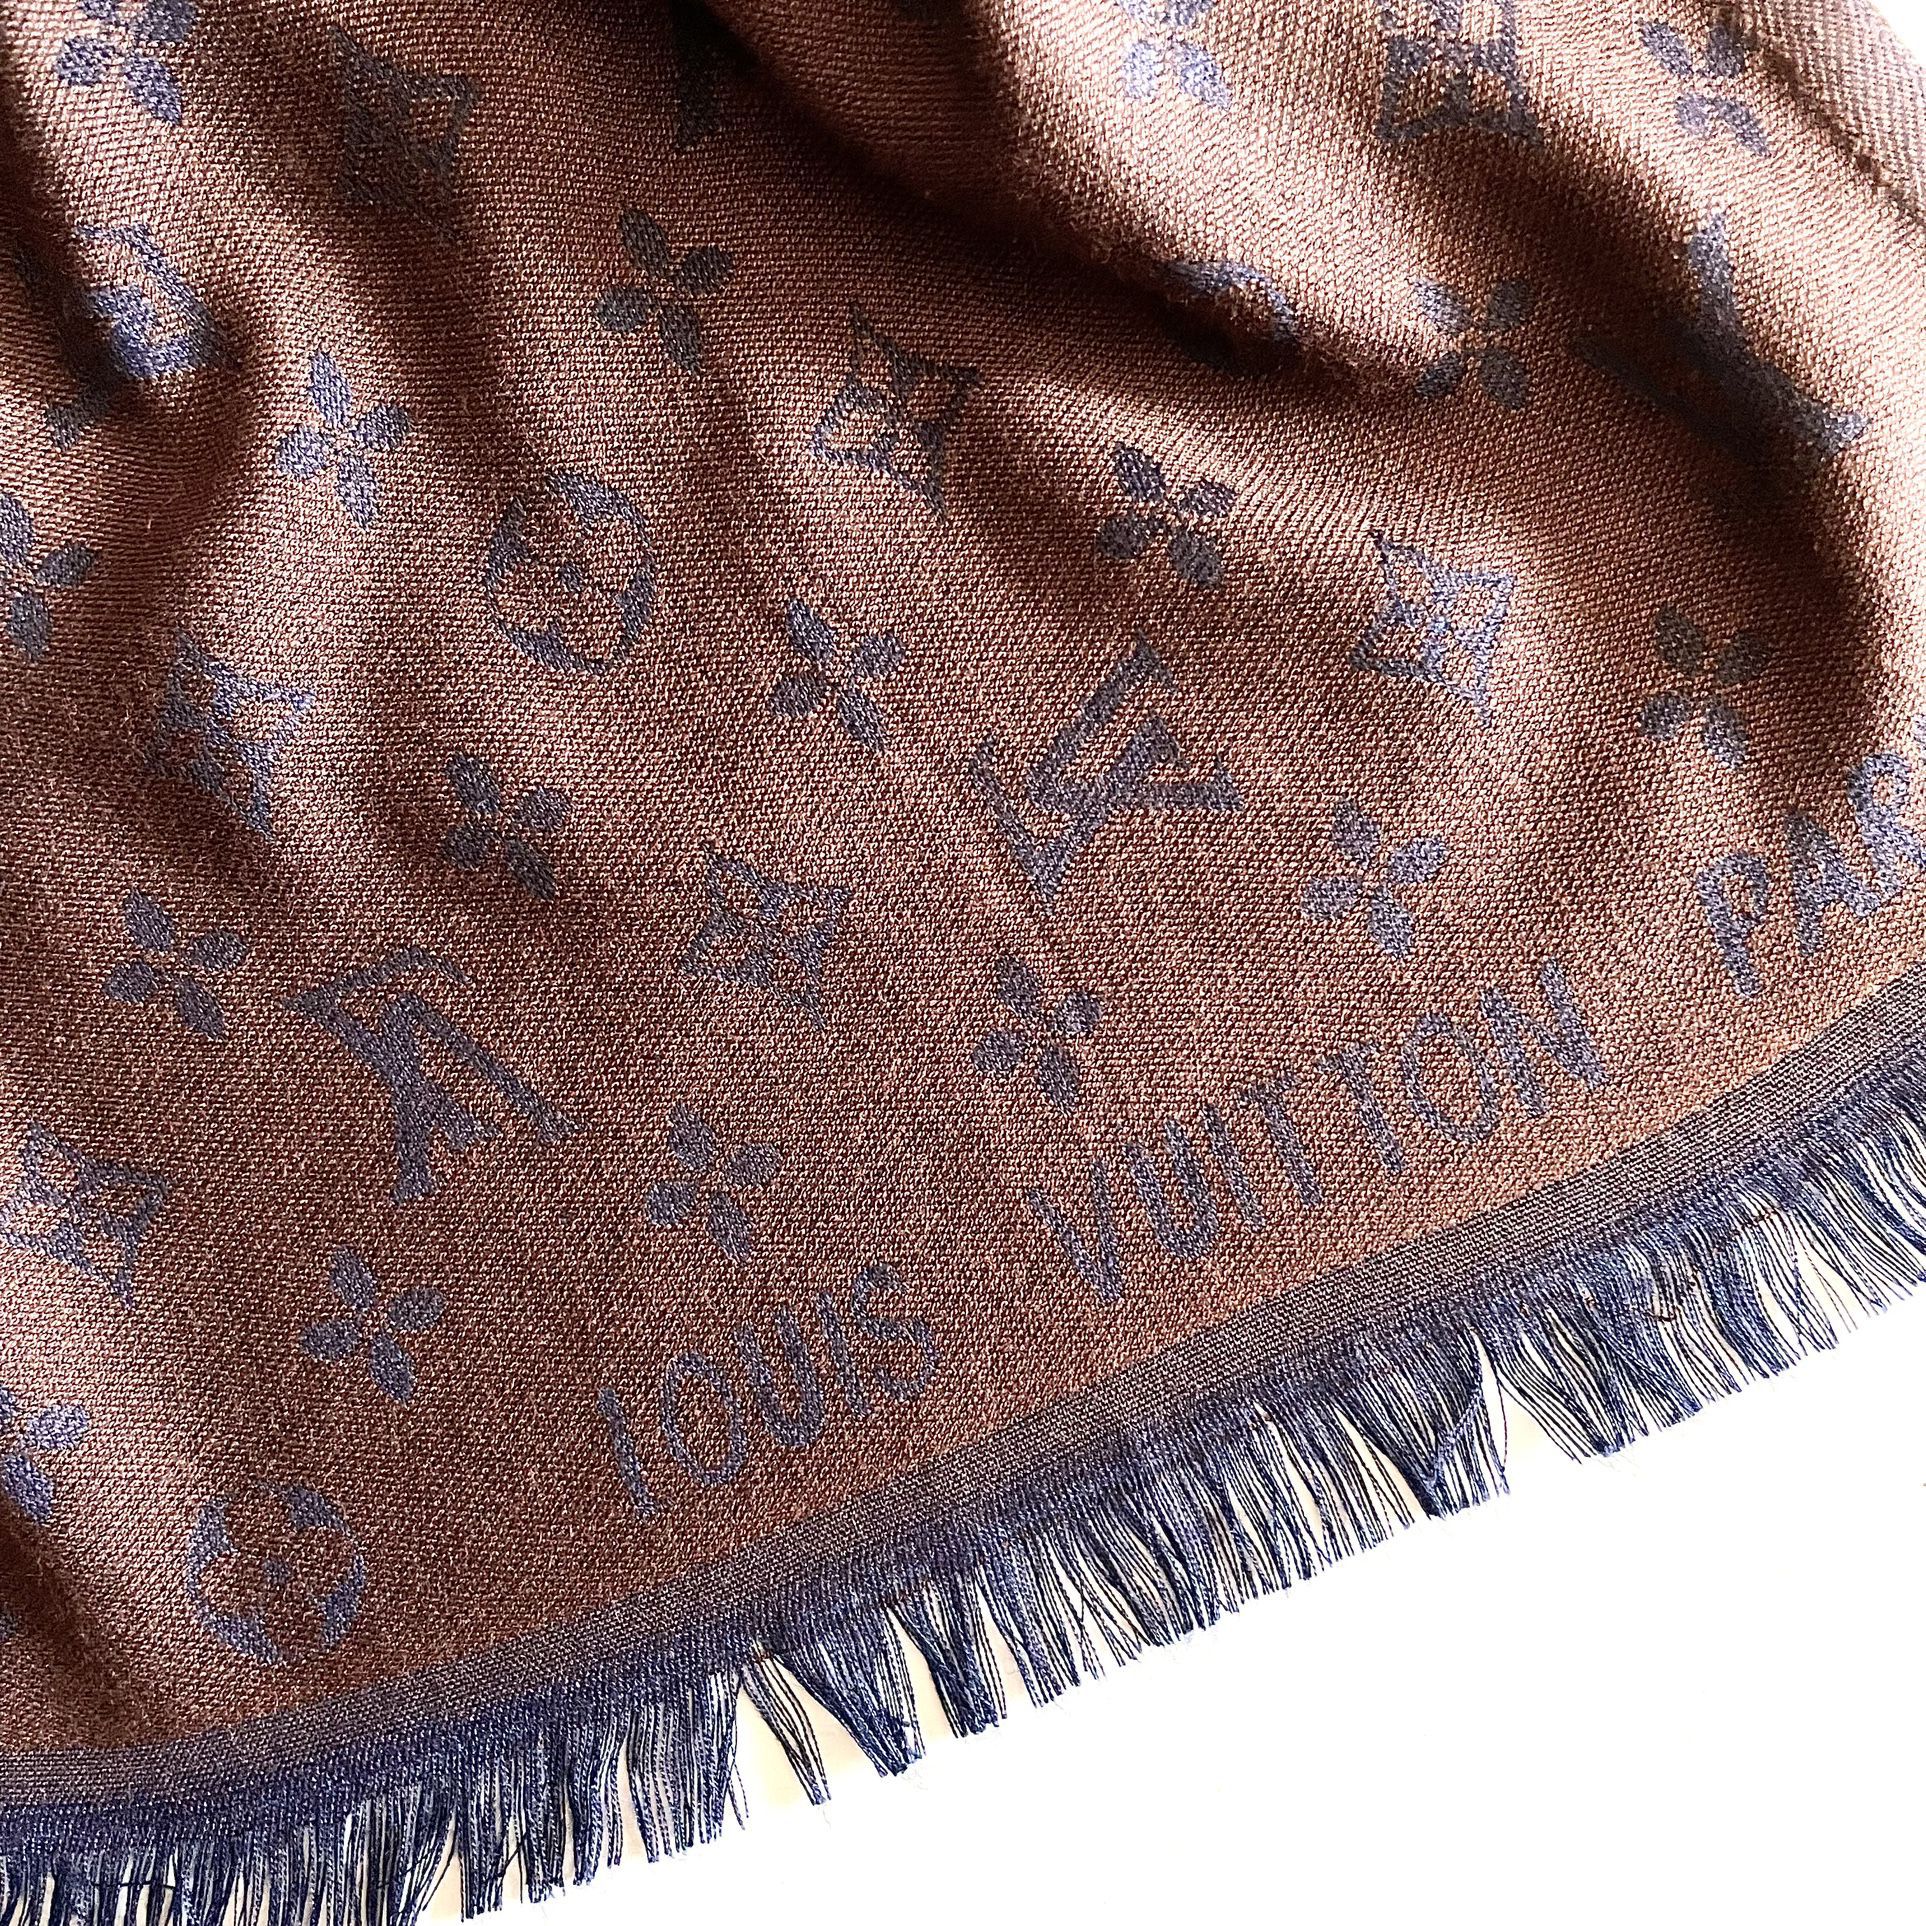 Louis Vuitton LV Monogram Silk Cashmere Scarf - 74"x27.5" Wrap in Brown & Dark Blue 